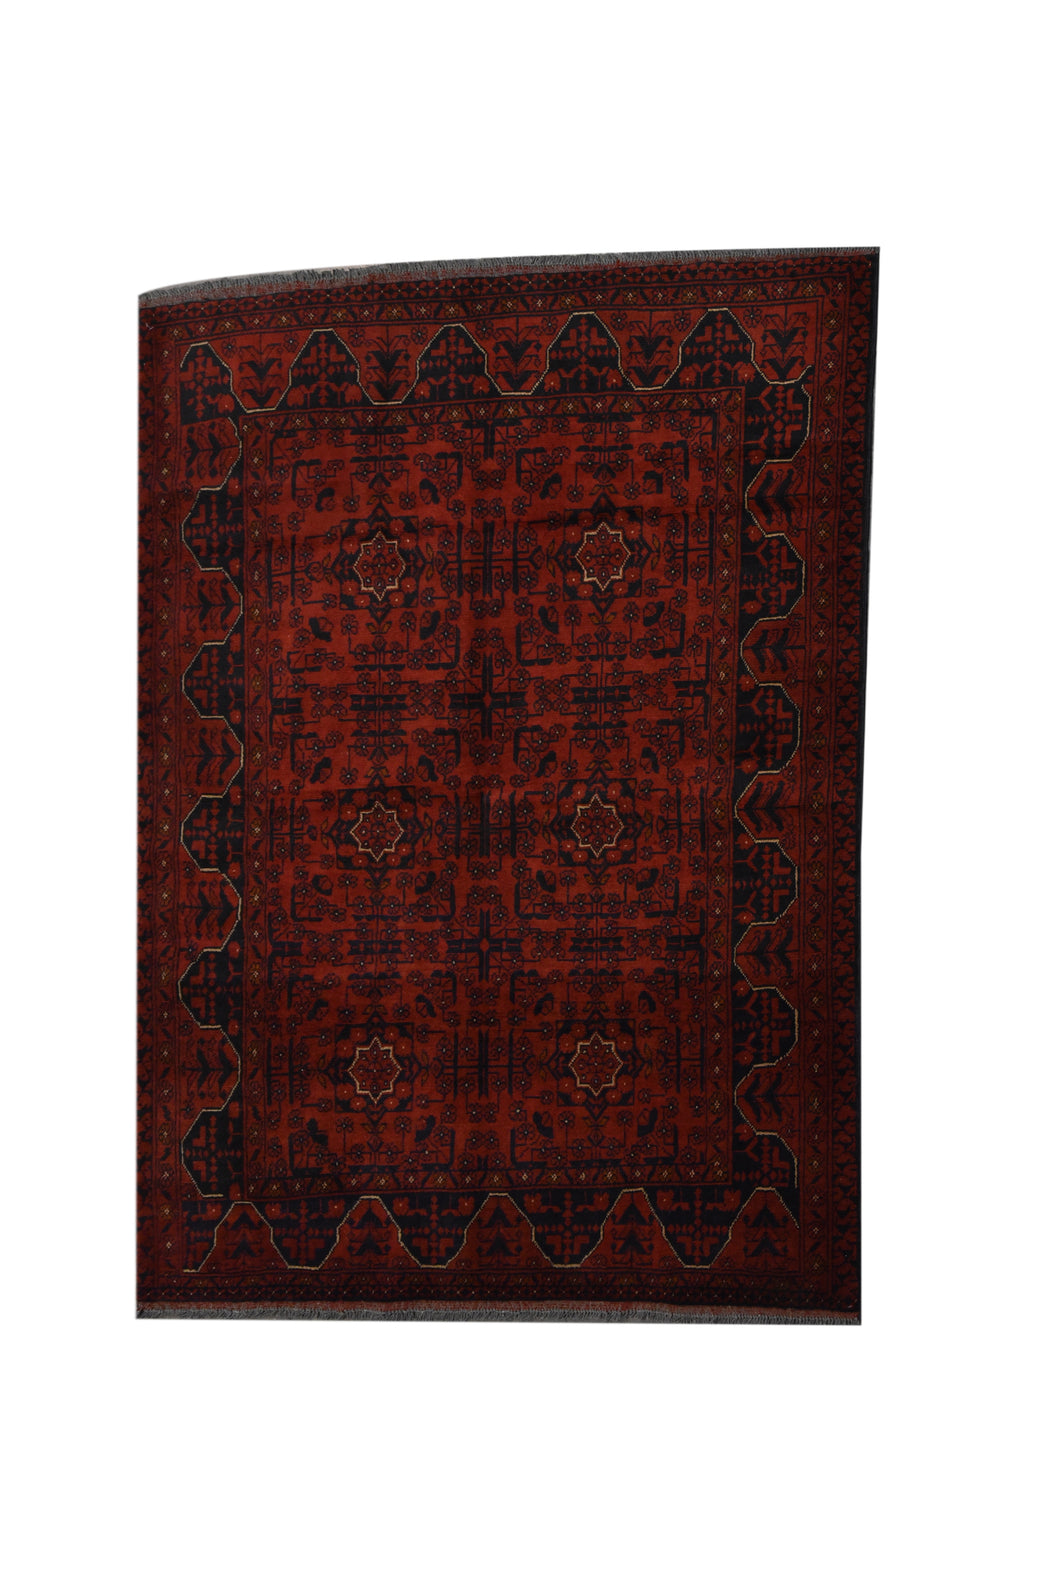 Fine Baluchi Afghan Rug , Size: 4'10'' x 6'3